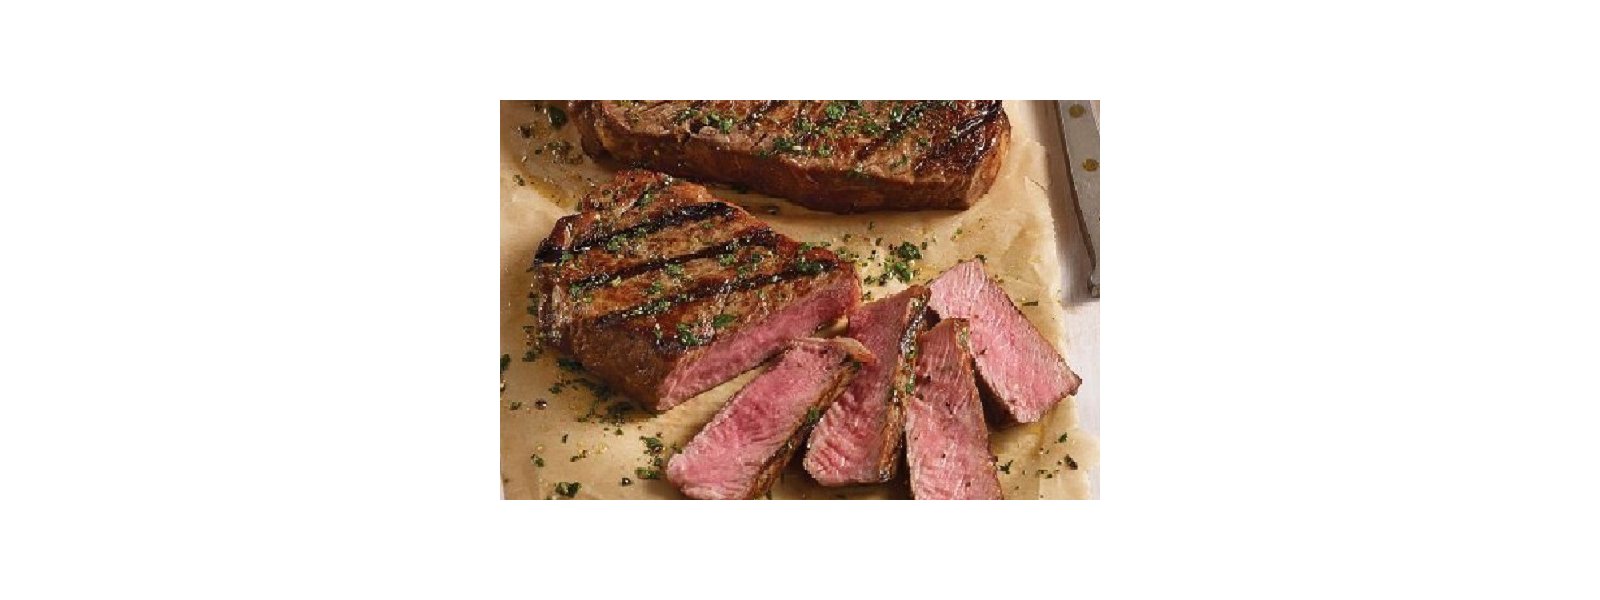 Striploin Steaks Vide 3 timer - Find lækre opskrifter på